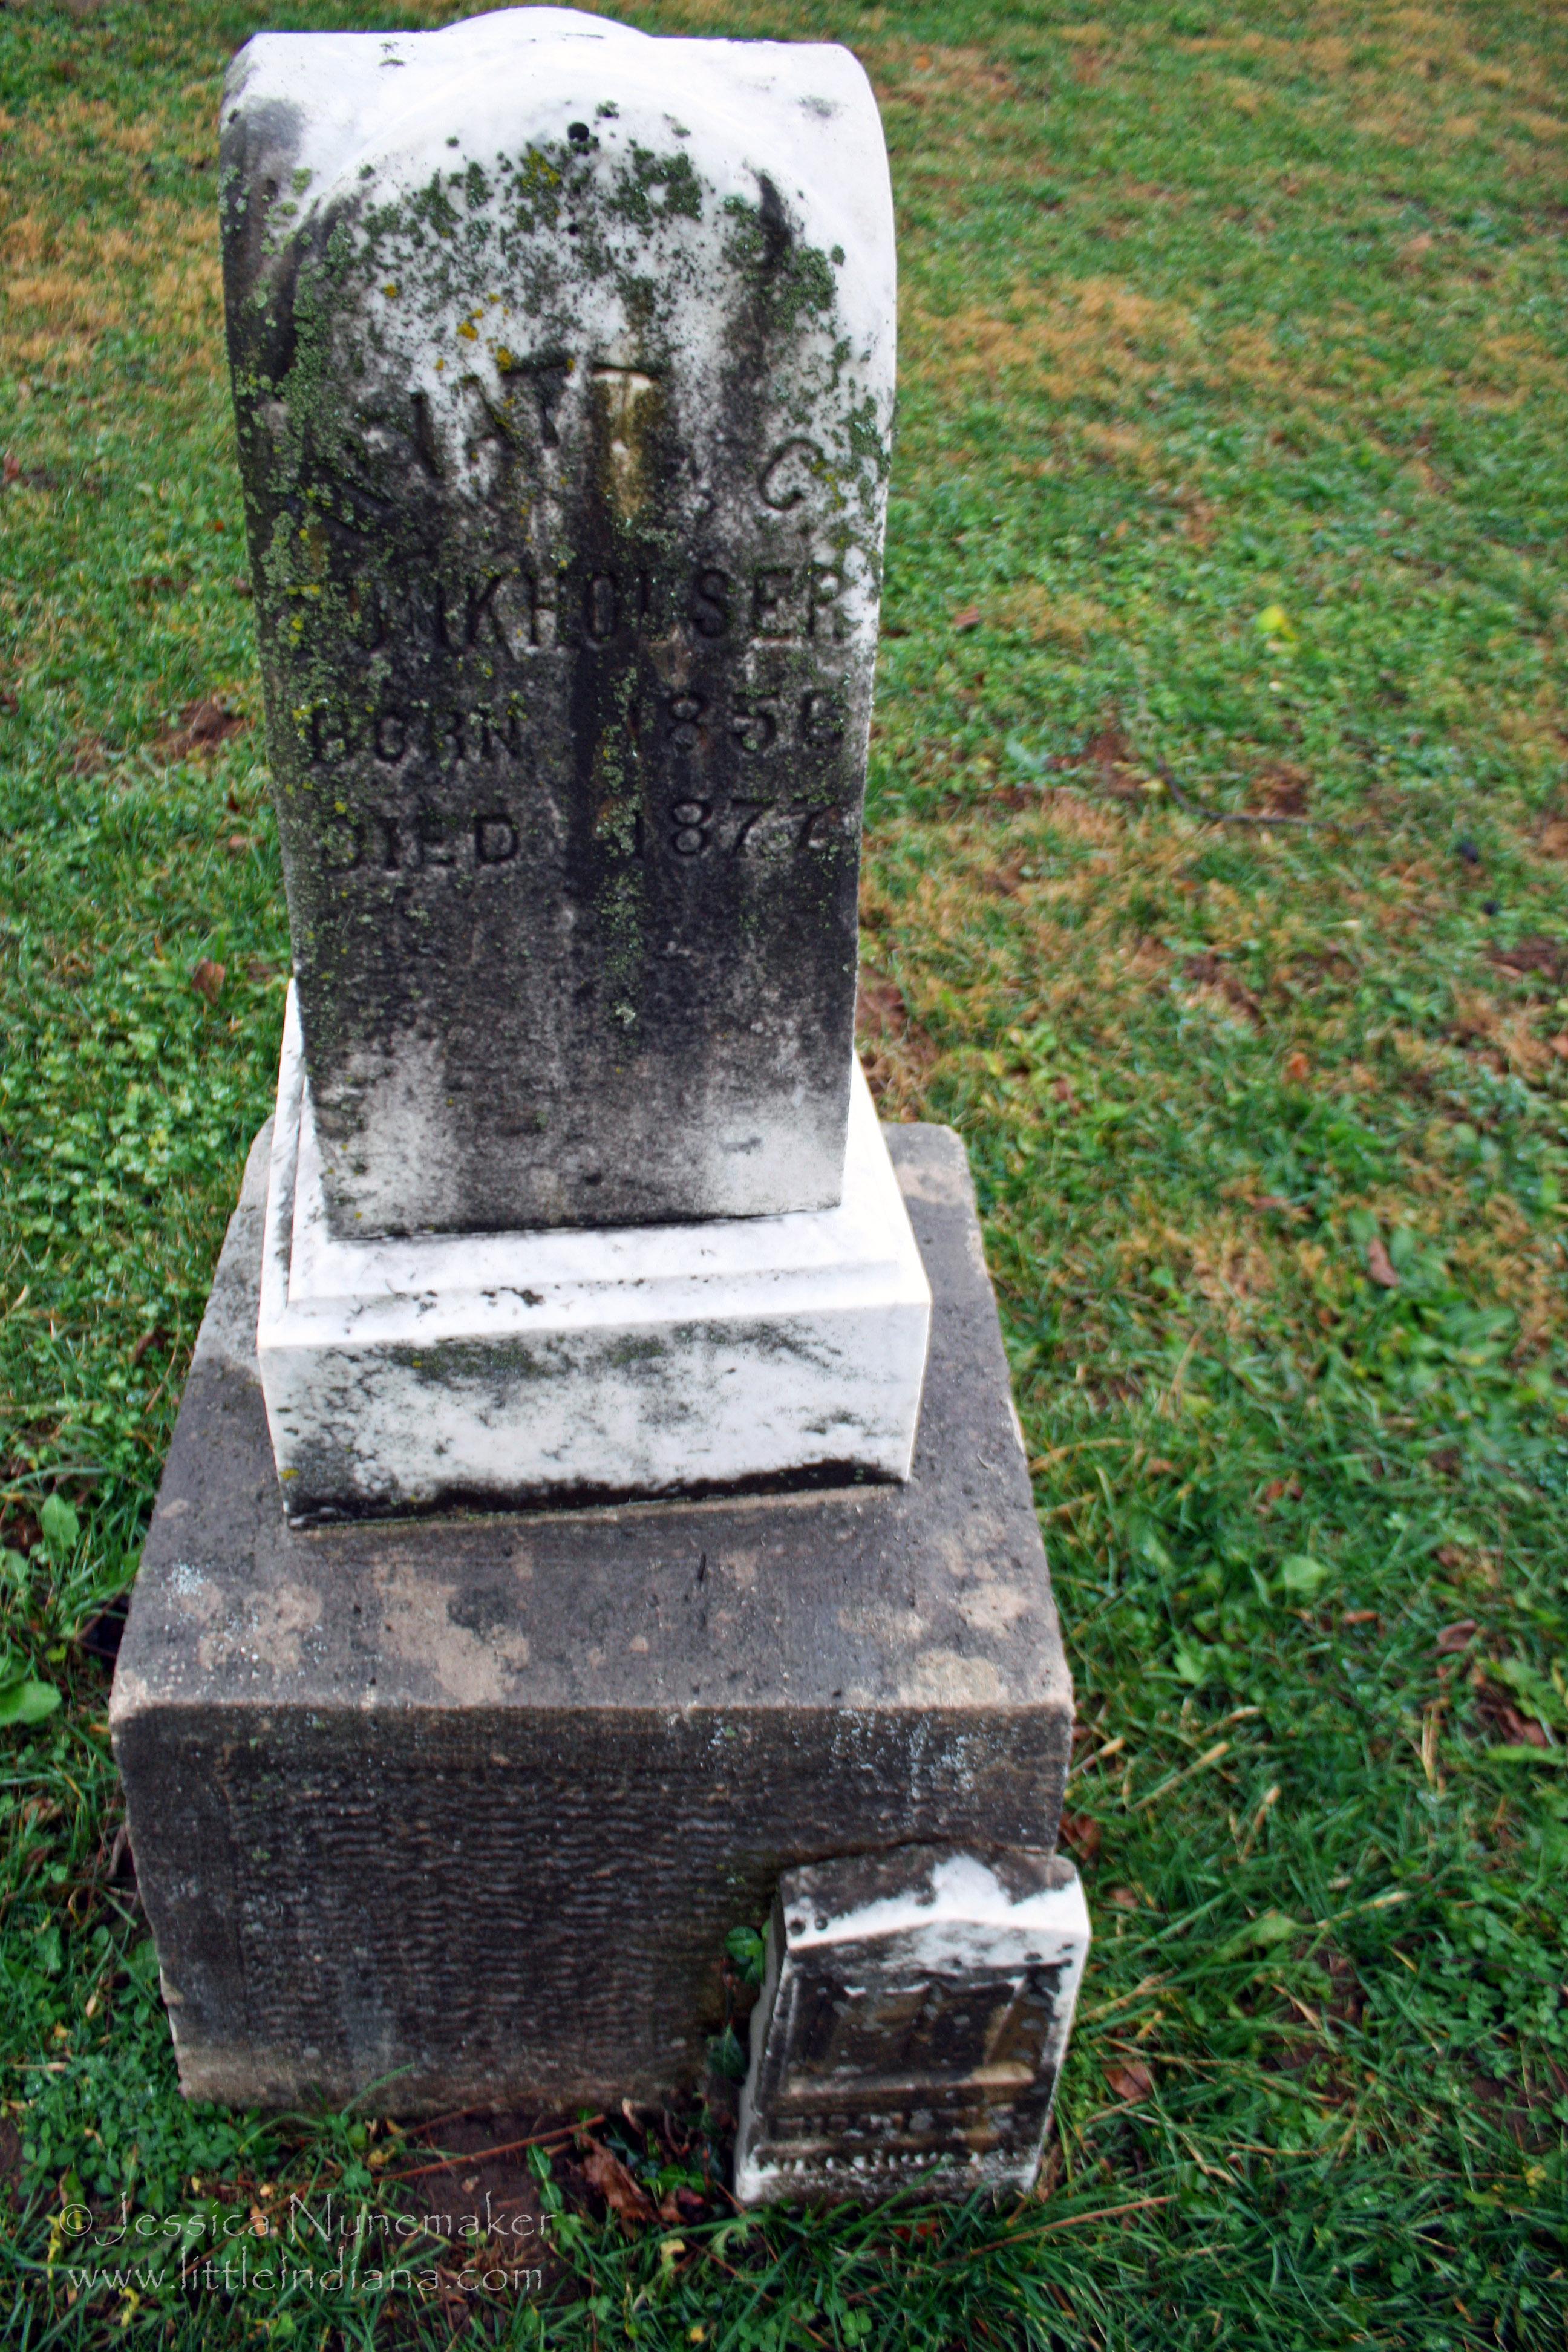 Sambo (Bethesda) Cemetery: Brownsburg, Indiana